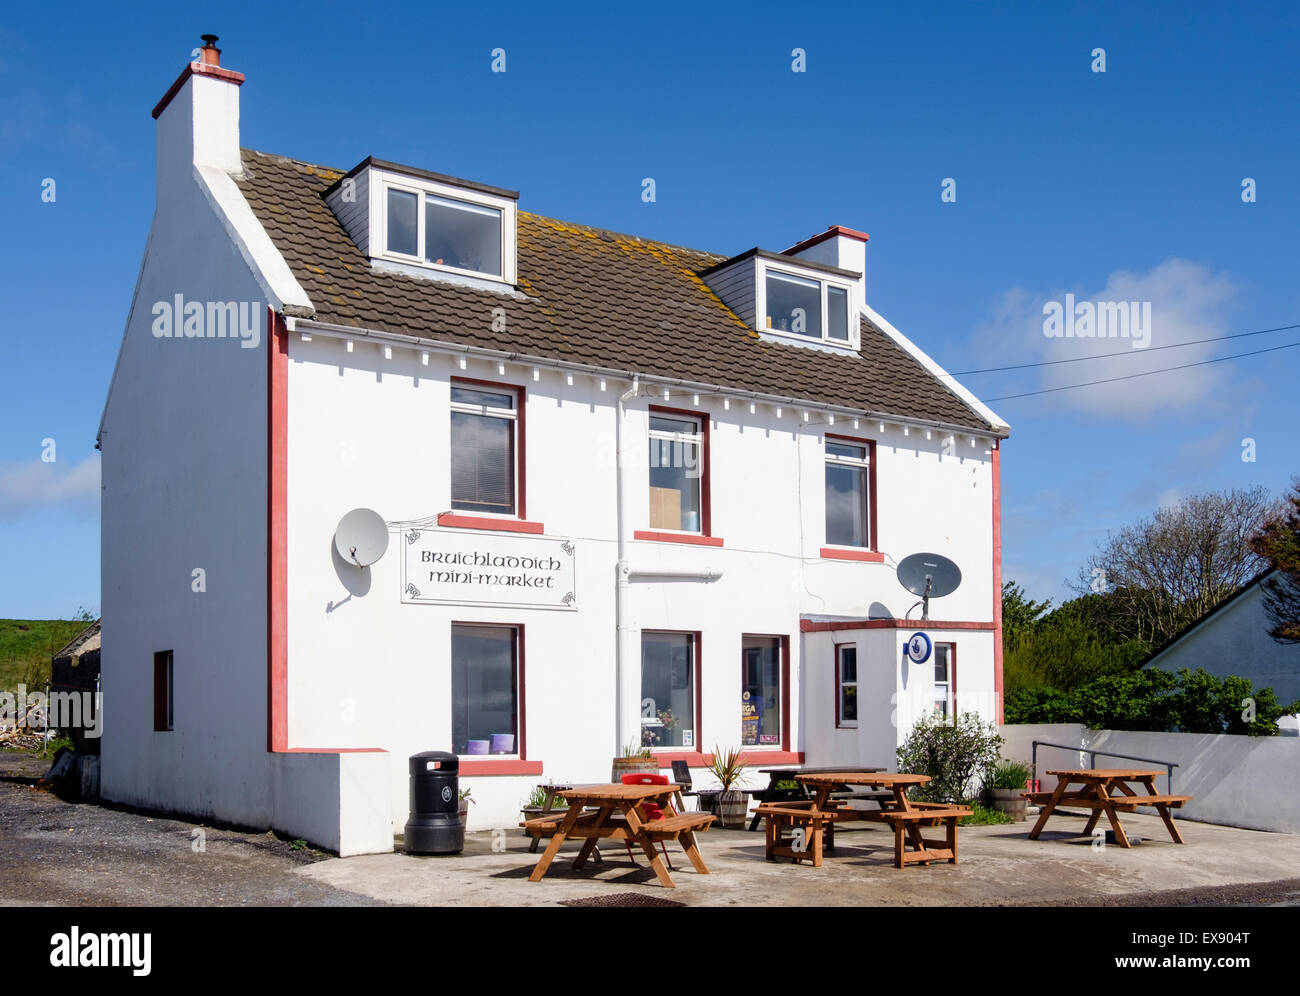 Mini Market Negozio locale e il Cafe con posti a sedere all'esterno. Bruichladdich, Isle of Islay, Argyll & Bute, Ebridi Interne, Scotland, Regno Unito Foto Stock